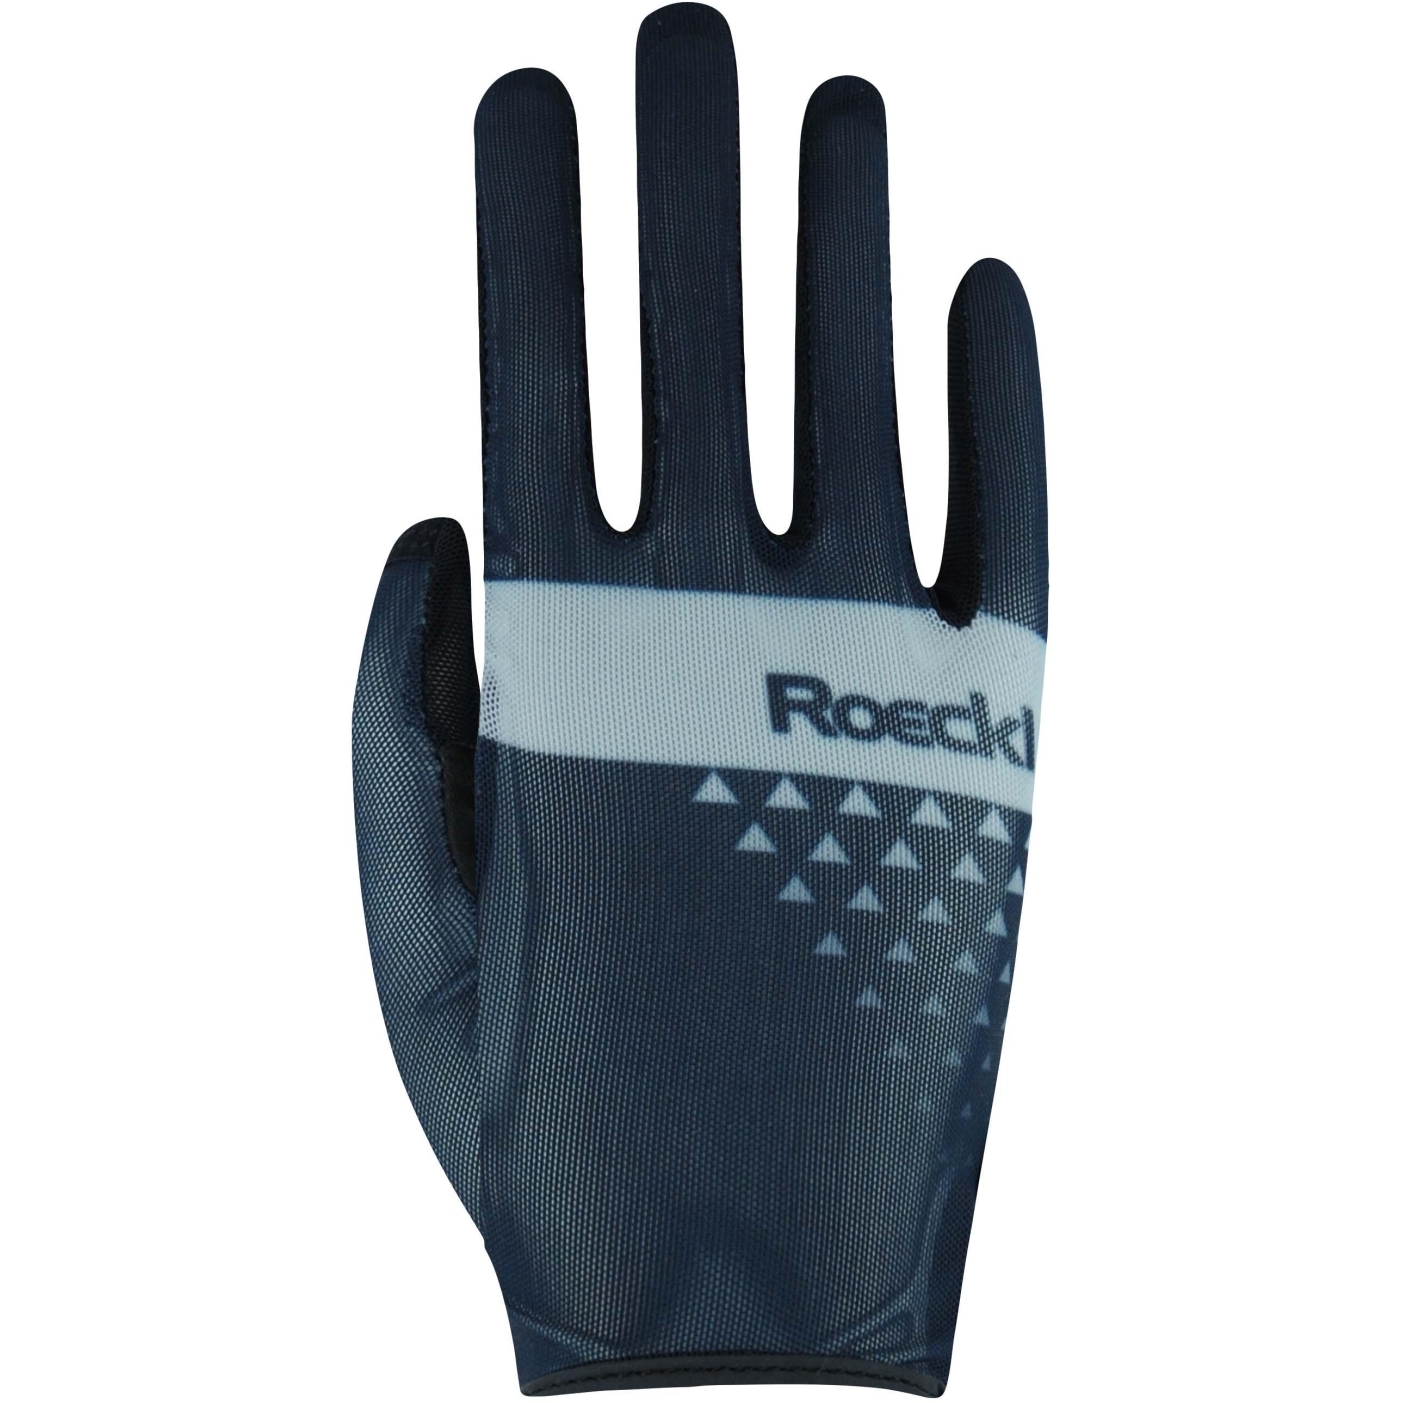 Produktbild von Roeckl Sports Mantua Fahrradhandschuhe - black shadow 9600